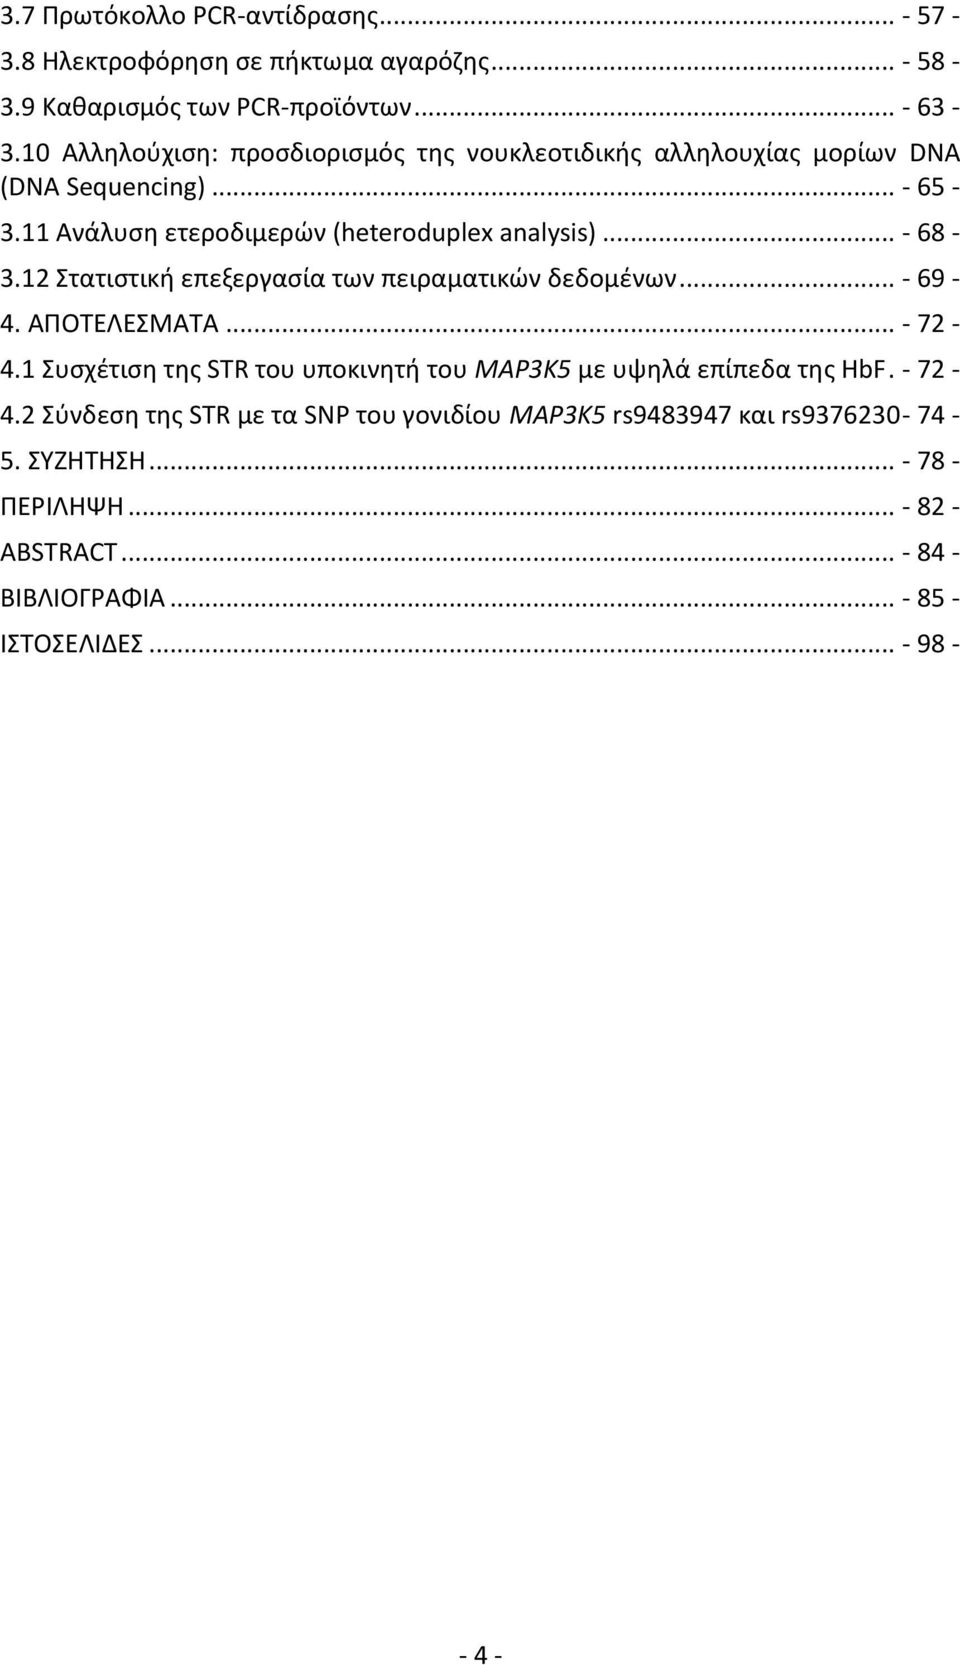 12 Στατιστική επεξεργασία των πειραματικών δεδομένων... - 69-4. ΑΠΟΤΕΛΕΣΜΑΤΑ... - 72-4.1 Συσχέτιση της STR του υποκινητή του MAP3K5 με υψηλά επίπεδα της HbF.